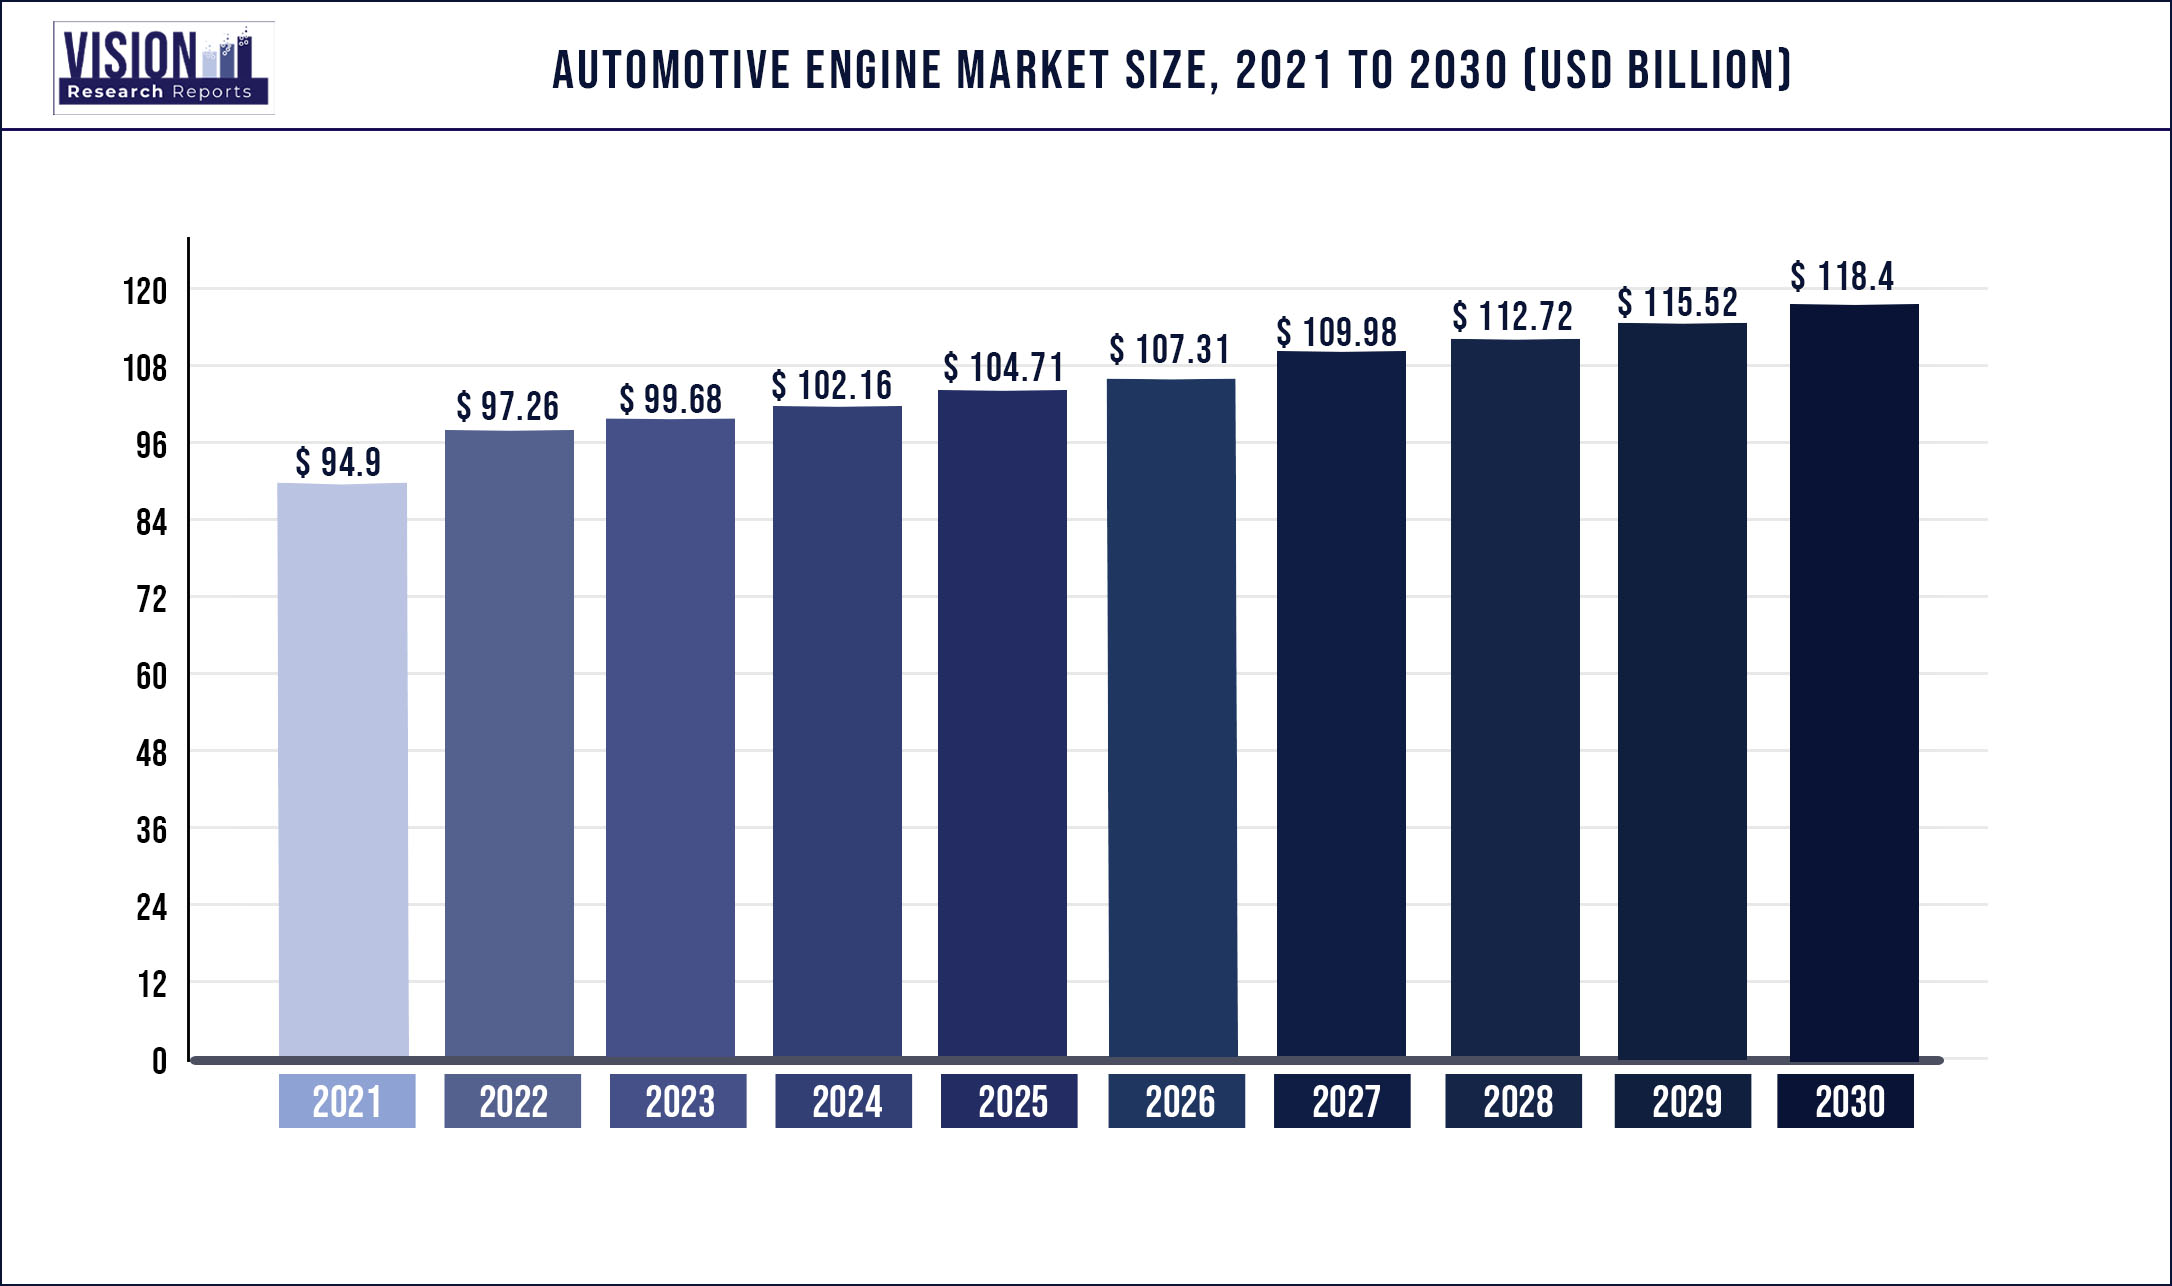 Automotive Engine Market Size 2021 to 2030